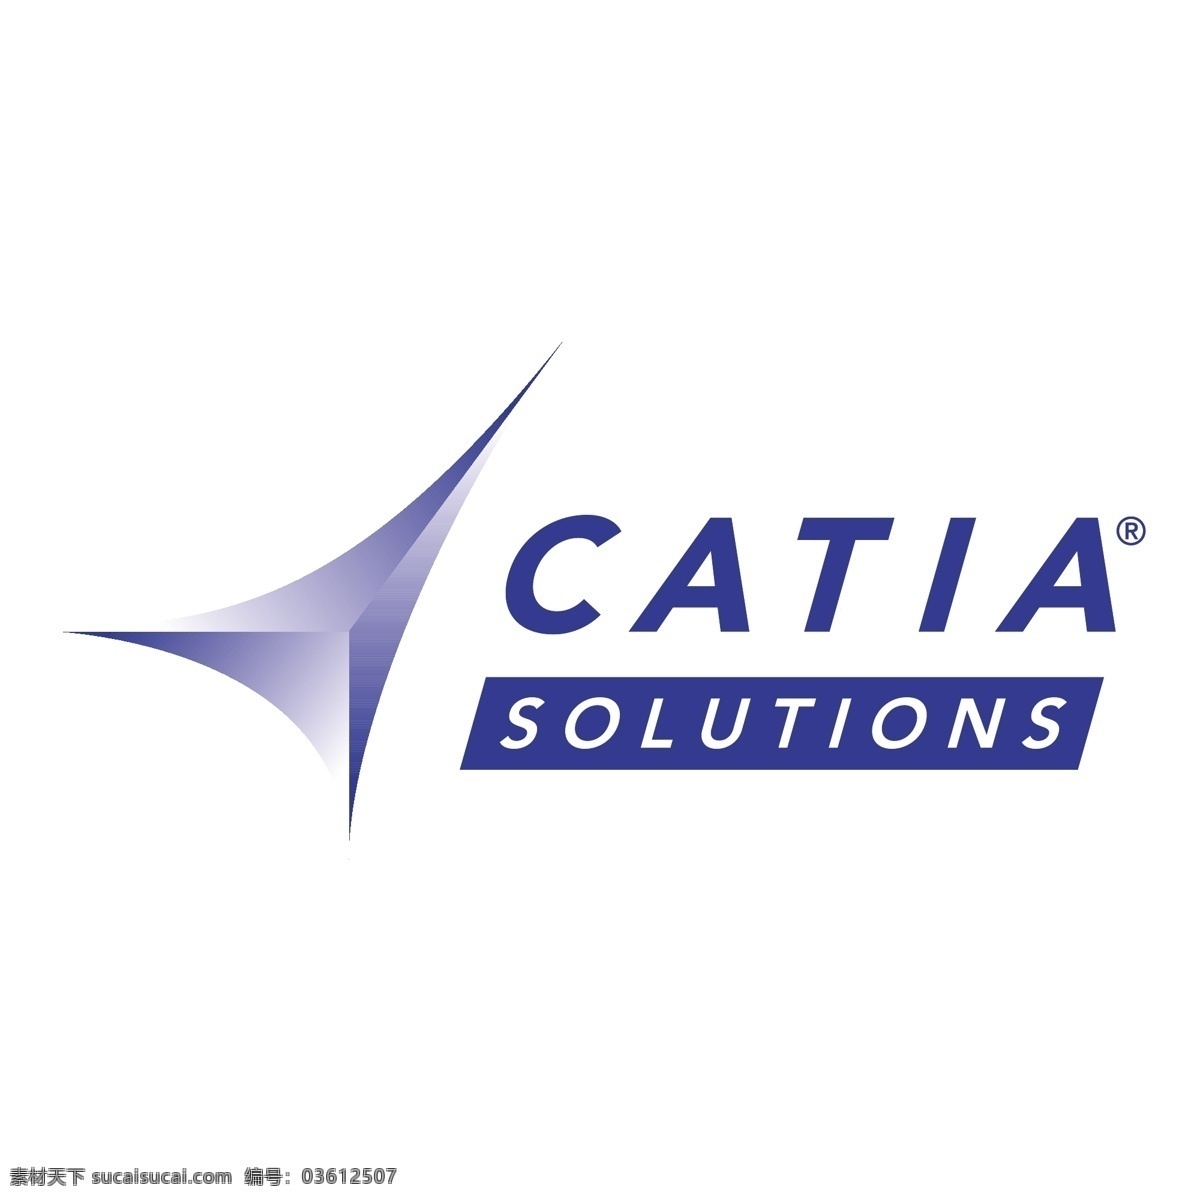 解决方案 catia 软件 红色